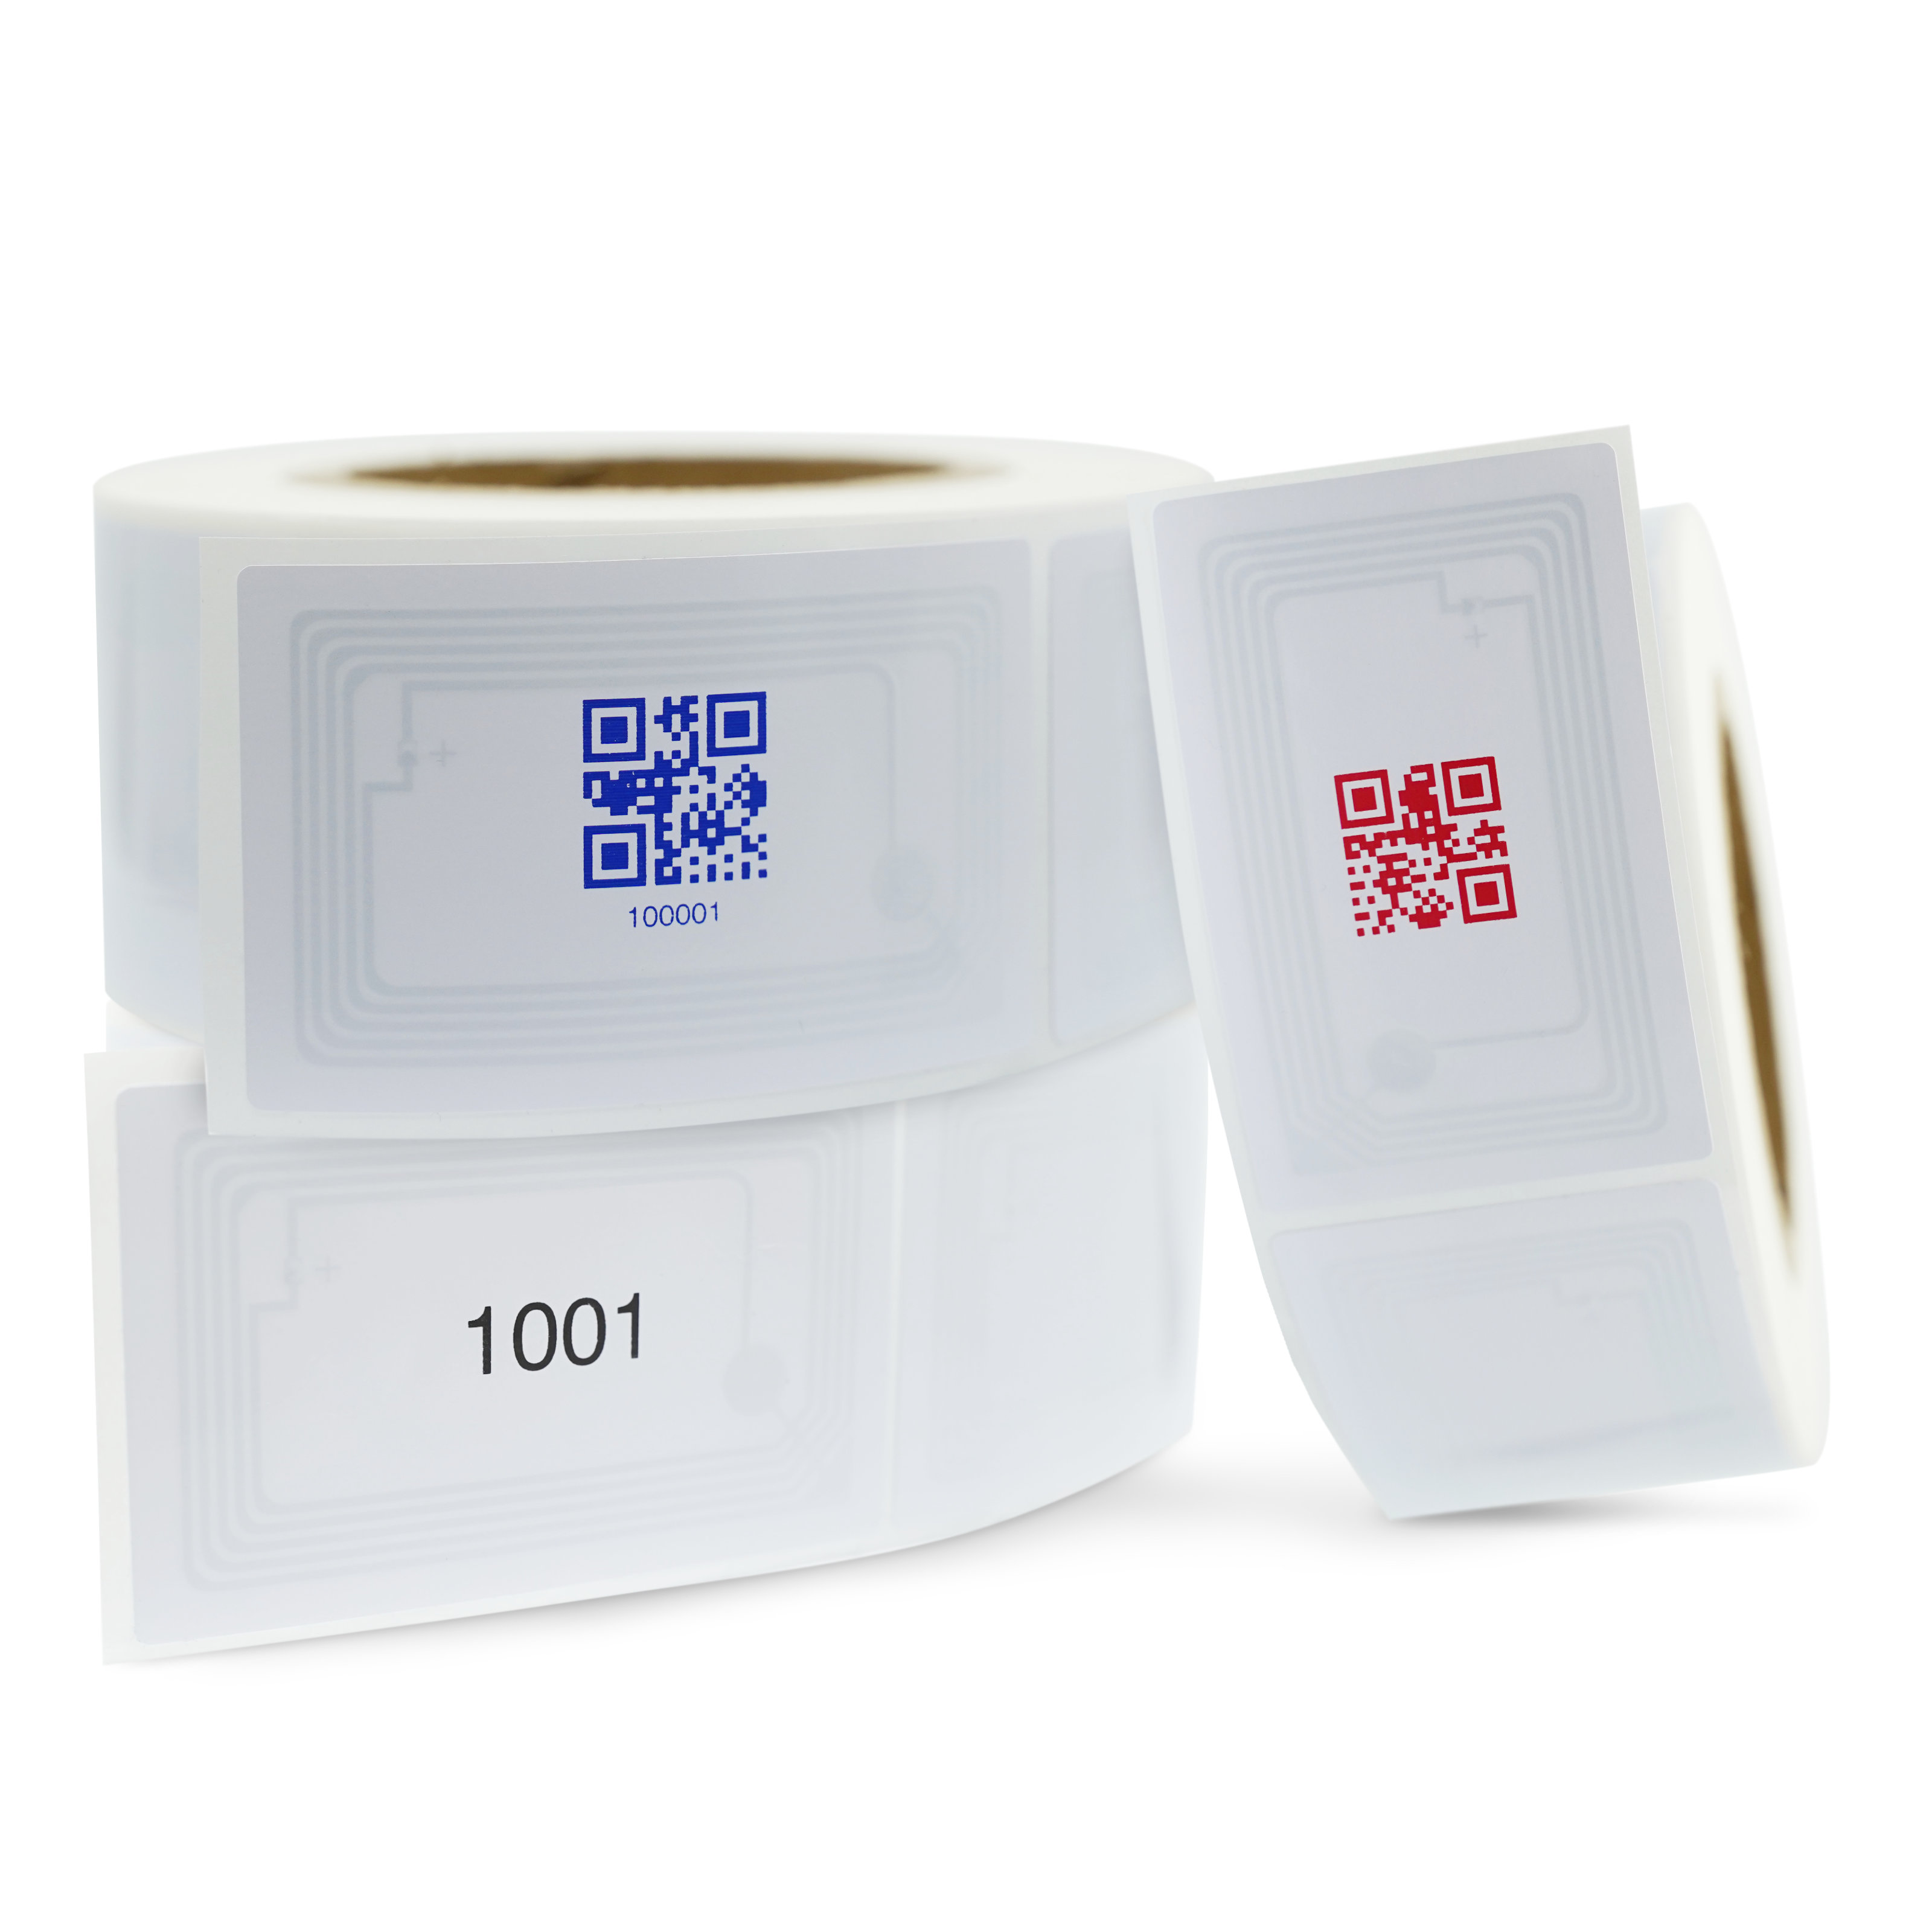 Drei Rollen mit NFC Sticker im ISO-Format mit QR- und ID-Aufdruck in verschiedenen Farben